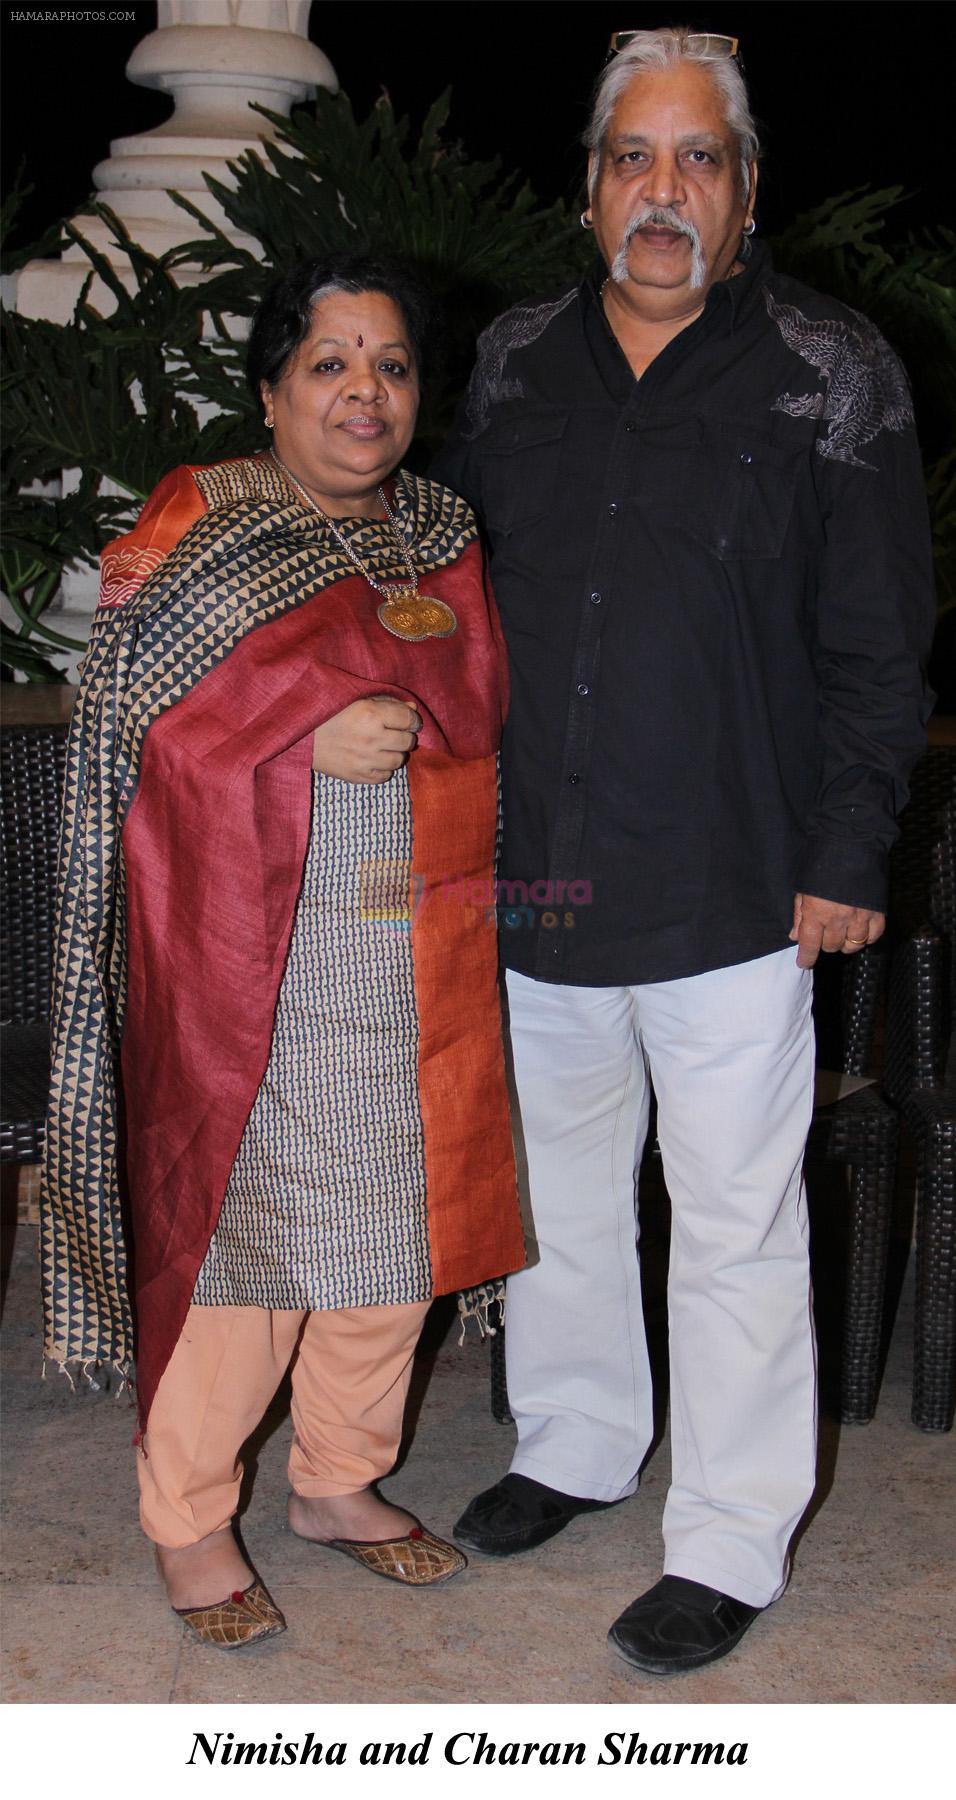 Nimisha and Charan Sharma at Cake Mixing Celebrations at Hotel Meluha the fern